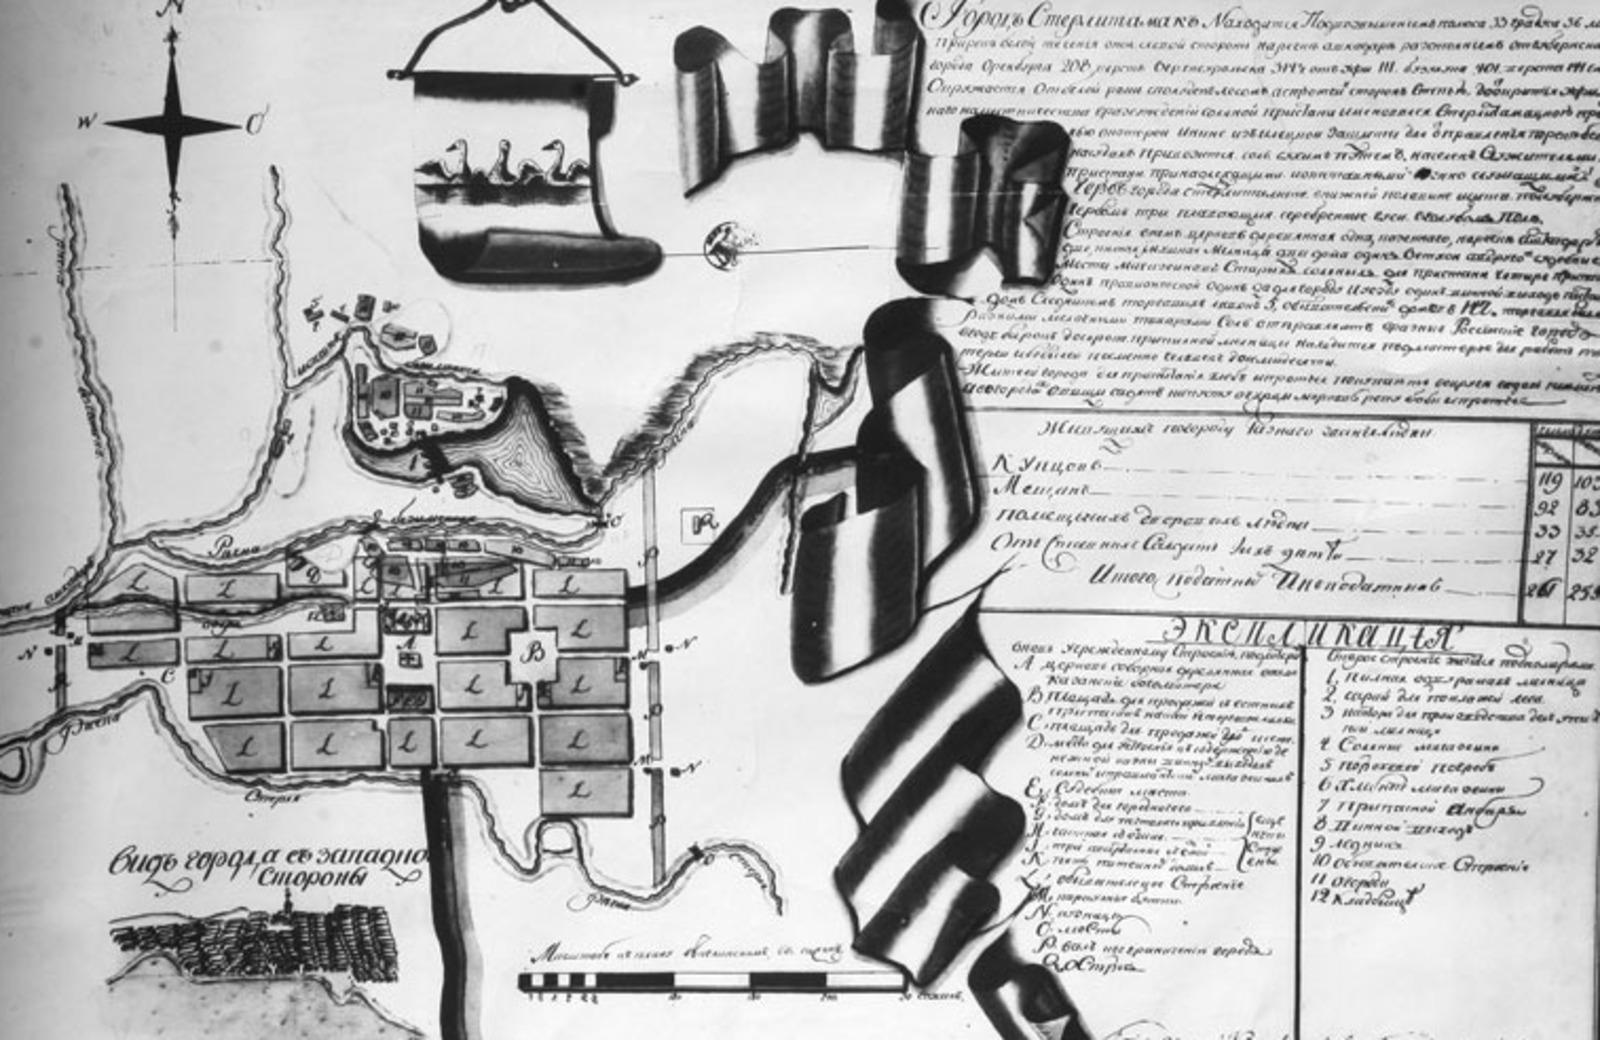 Стерлитамак. Экспликация 1794г. Составлена землемером Тимофеем Афанасьевым